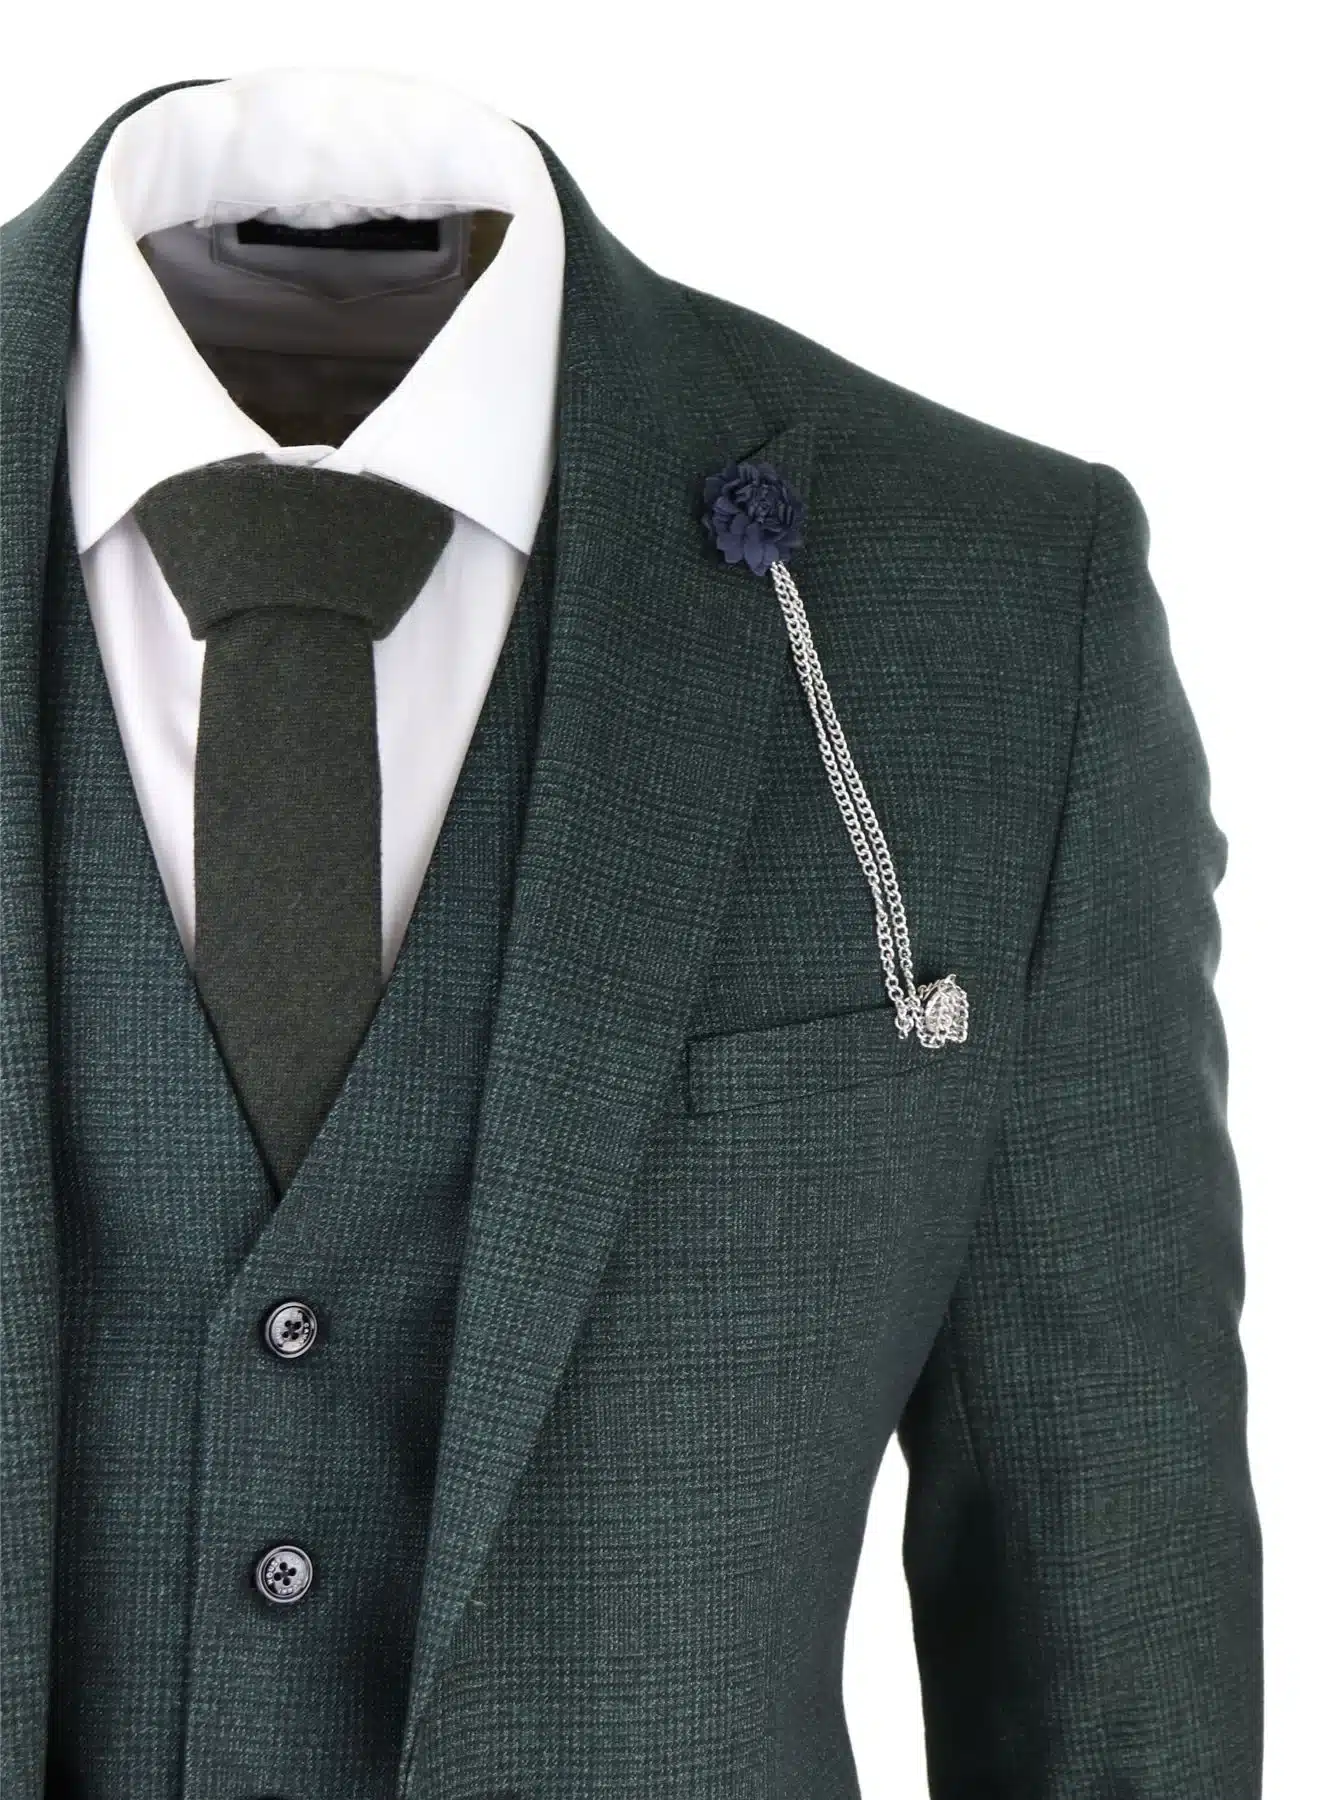 Gray Men's Wool Suit Vintage Herringbone Tweed Check Tuxedo Formal Prom Suit